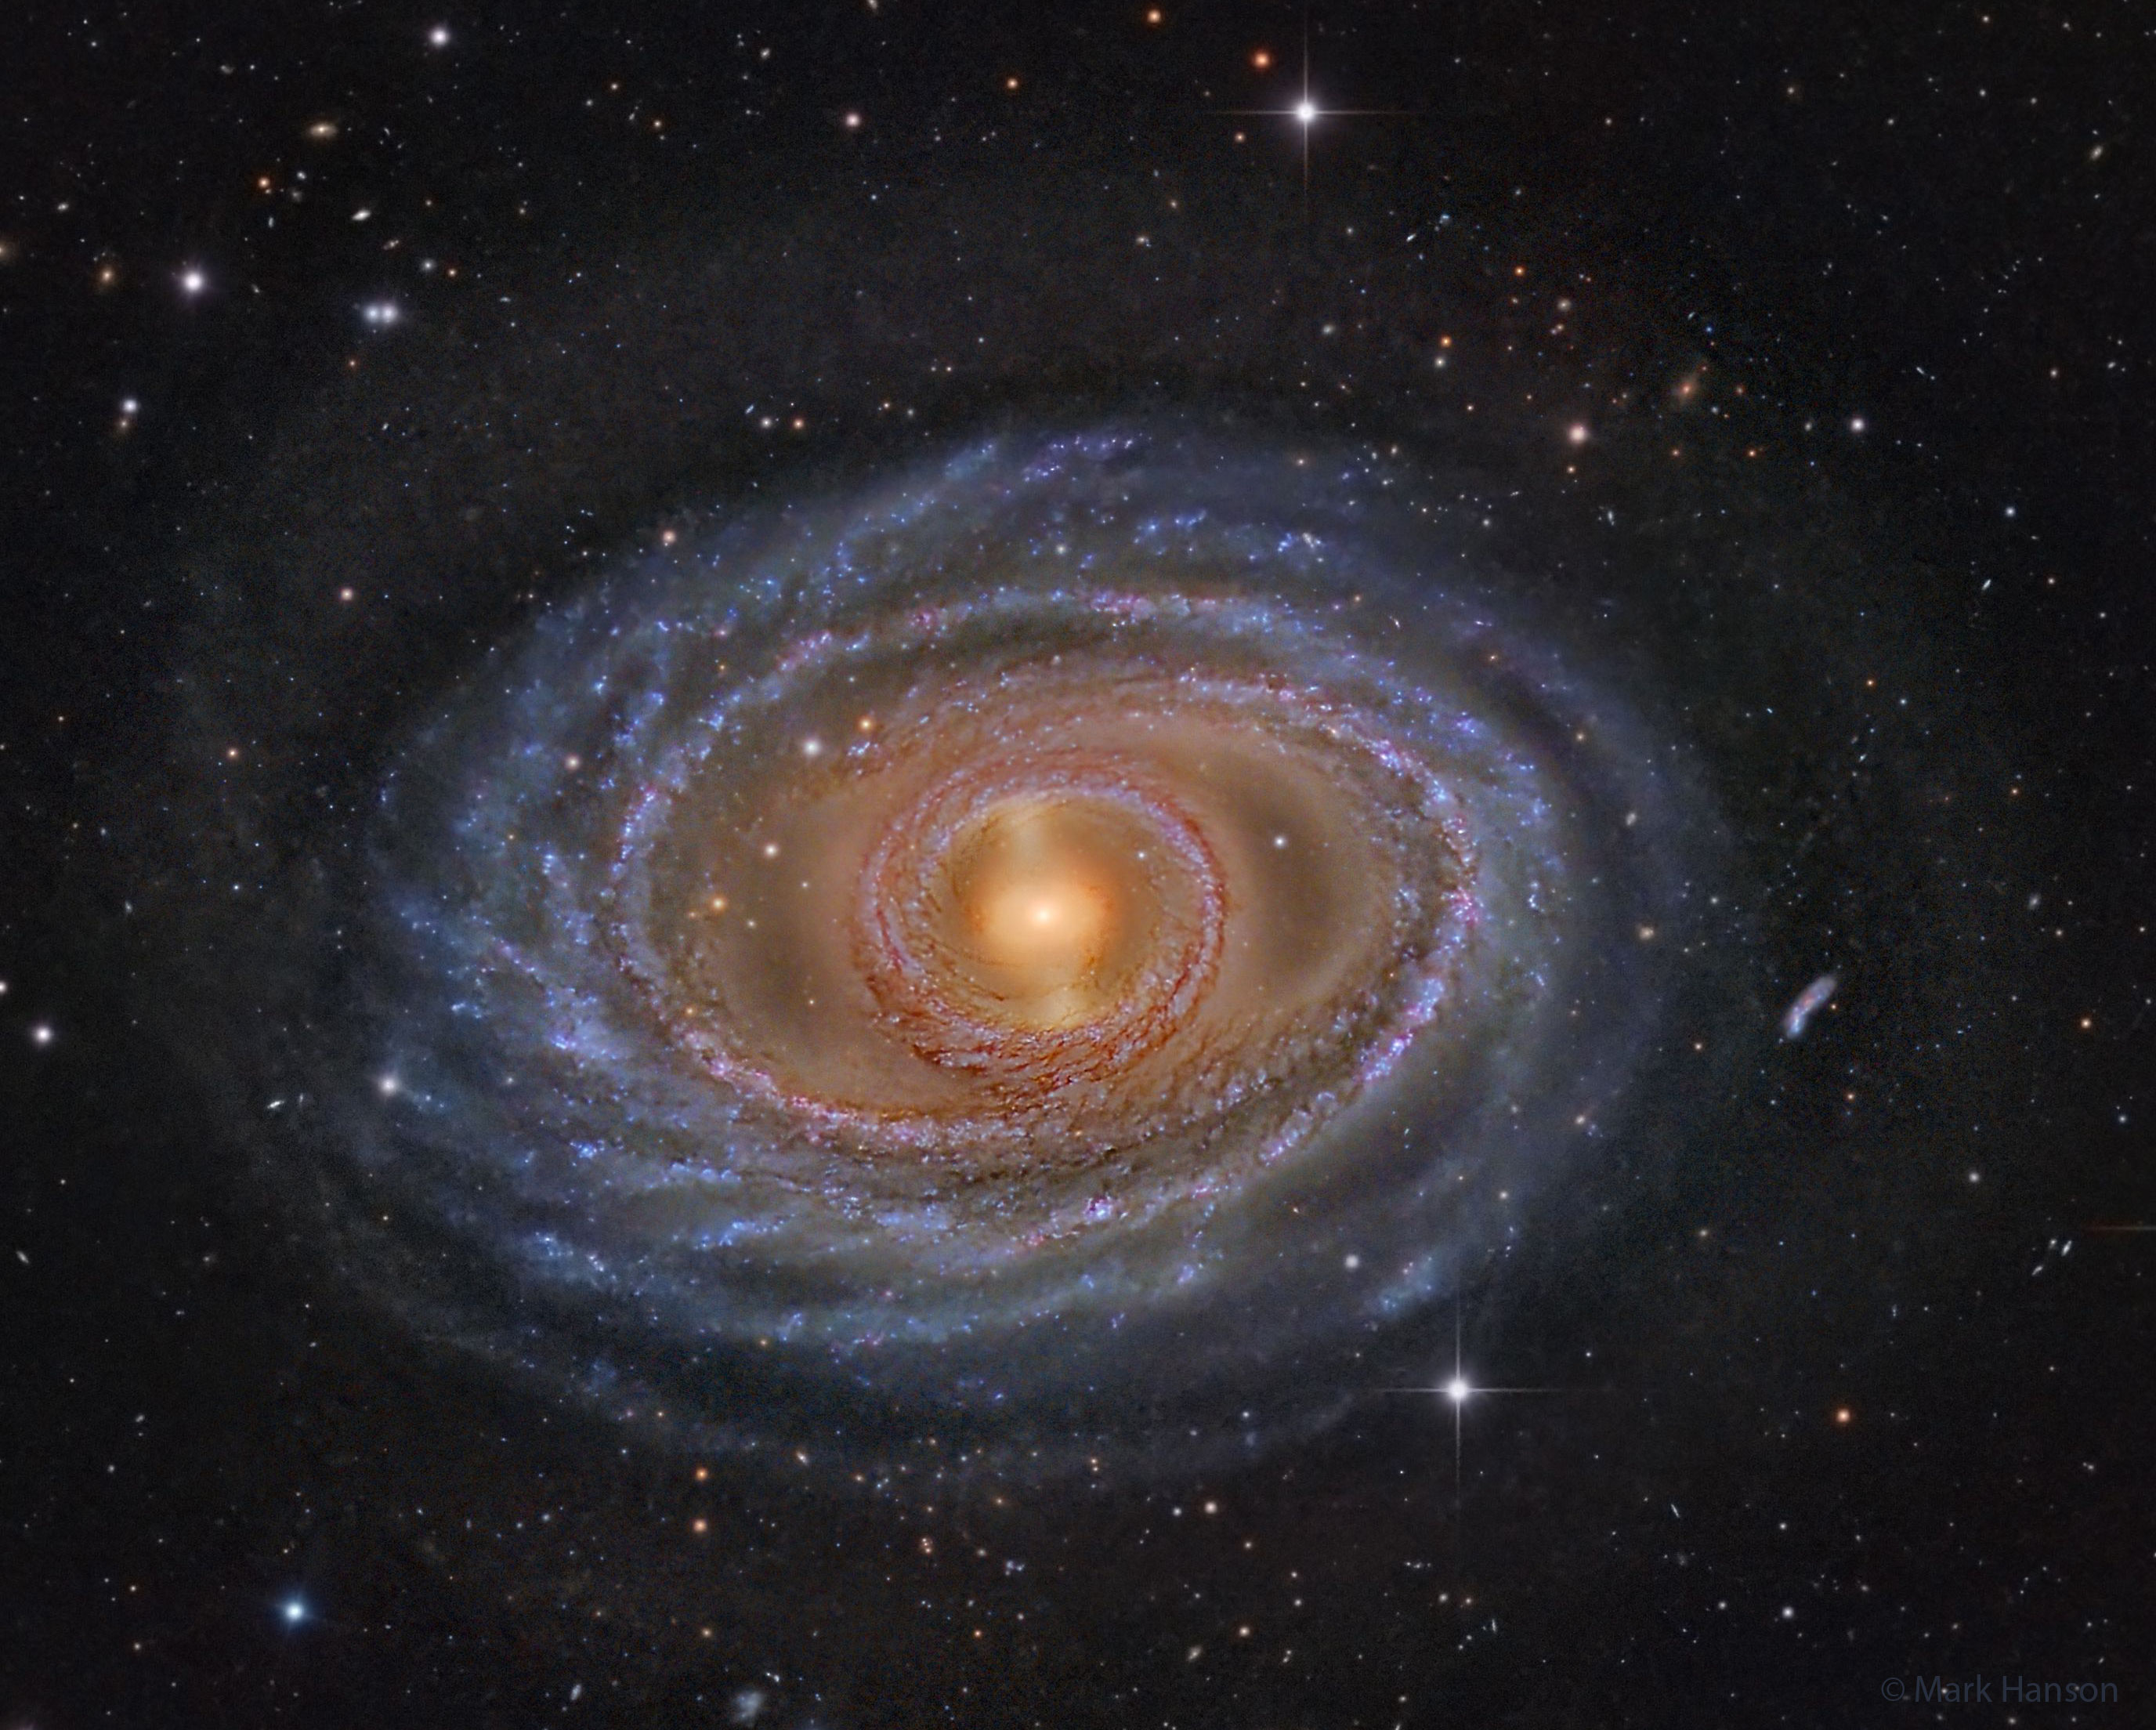 Kol'ca i peremychka v spiral'noi galaktike NGC 1398